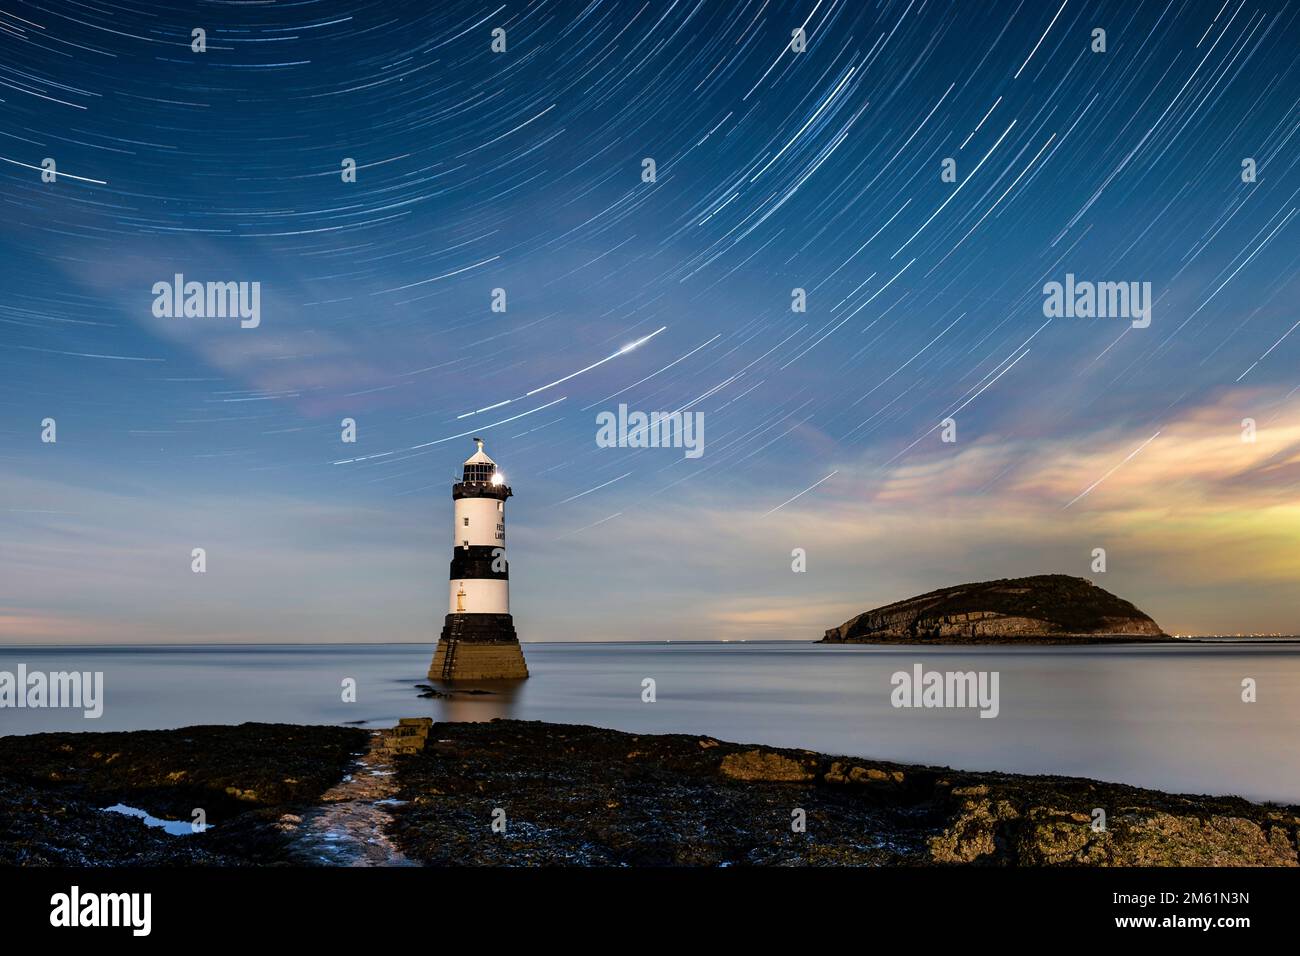 Star Trails au-dessus de Trwyn du Lighthouse et Puffin Island, Penmon point, Anglesey, au nord du pays de Galles, Royaume-Uni Banque D'Images